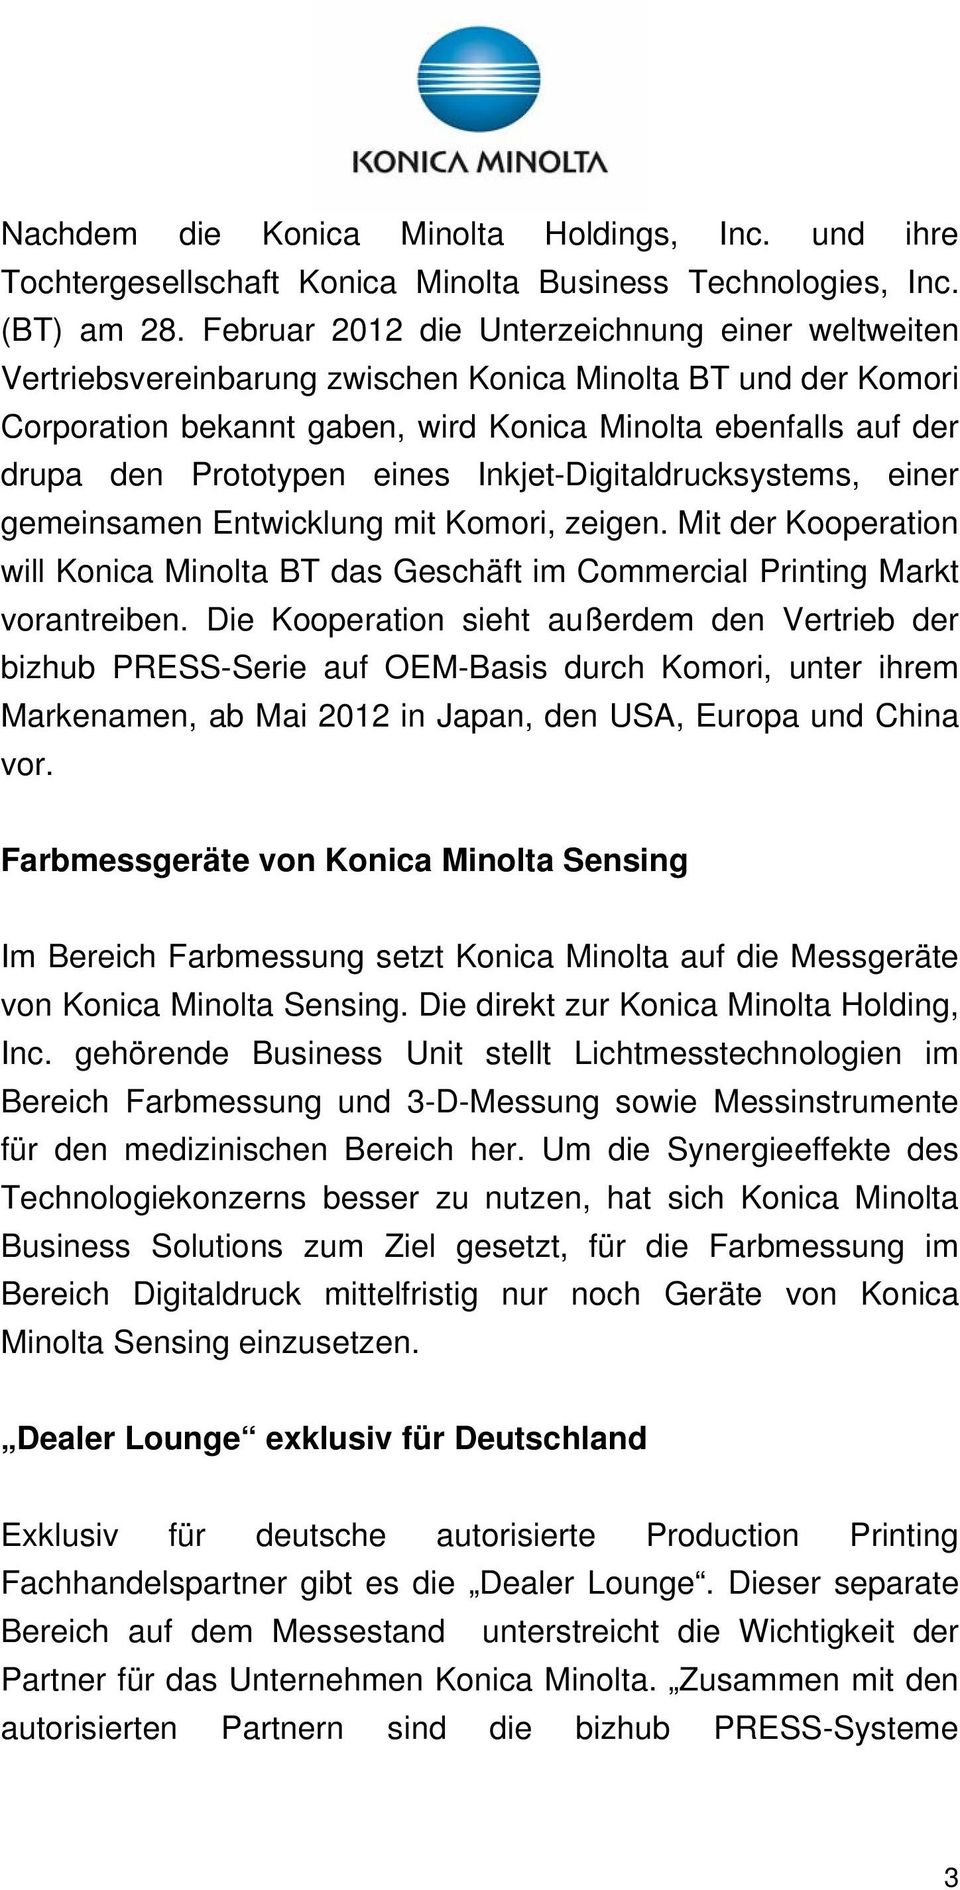 eines Inkjet-Digitaldrucksystems, einer gemeinsamen Entwicklung mit Komori, zeigen. Mit der Kooperation will Konica Minolta BT das Geschäft im Commercial Printing Markt vorantreiben.